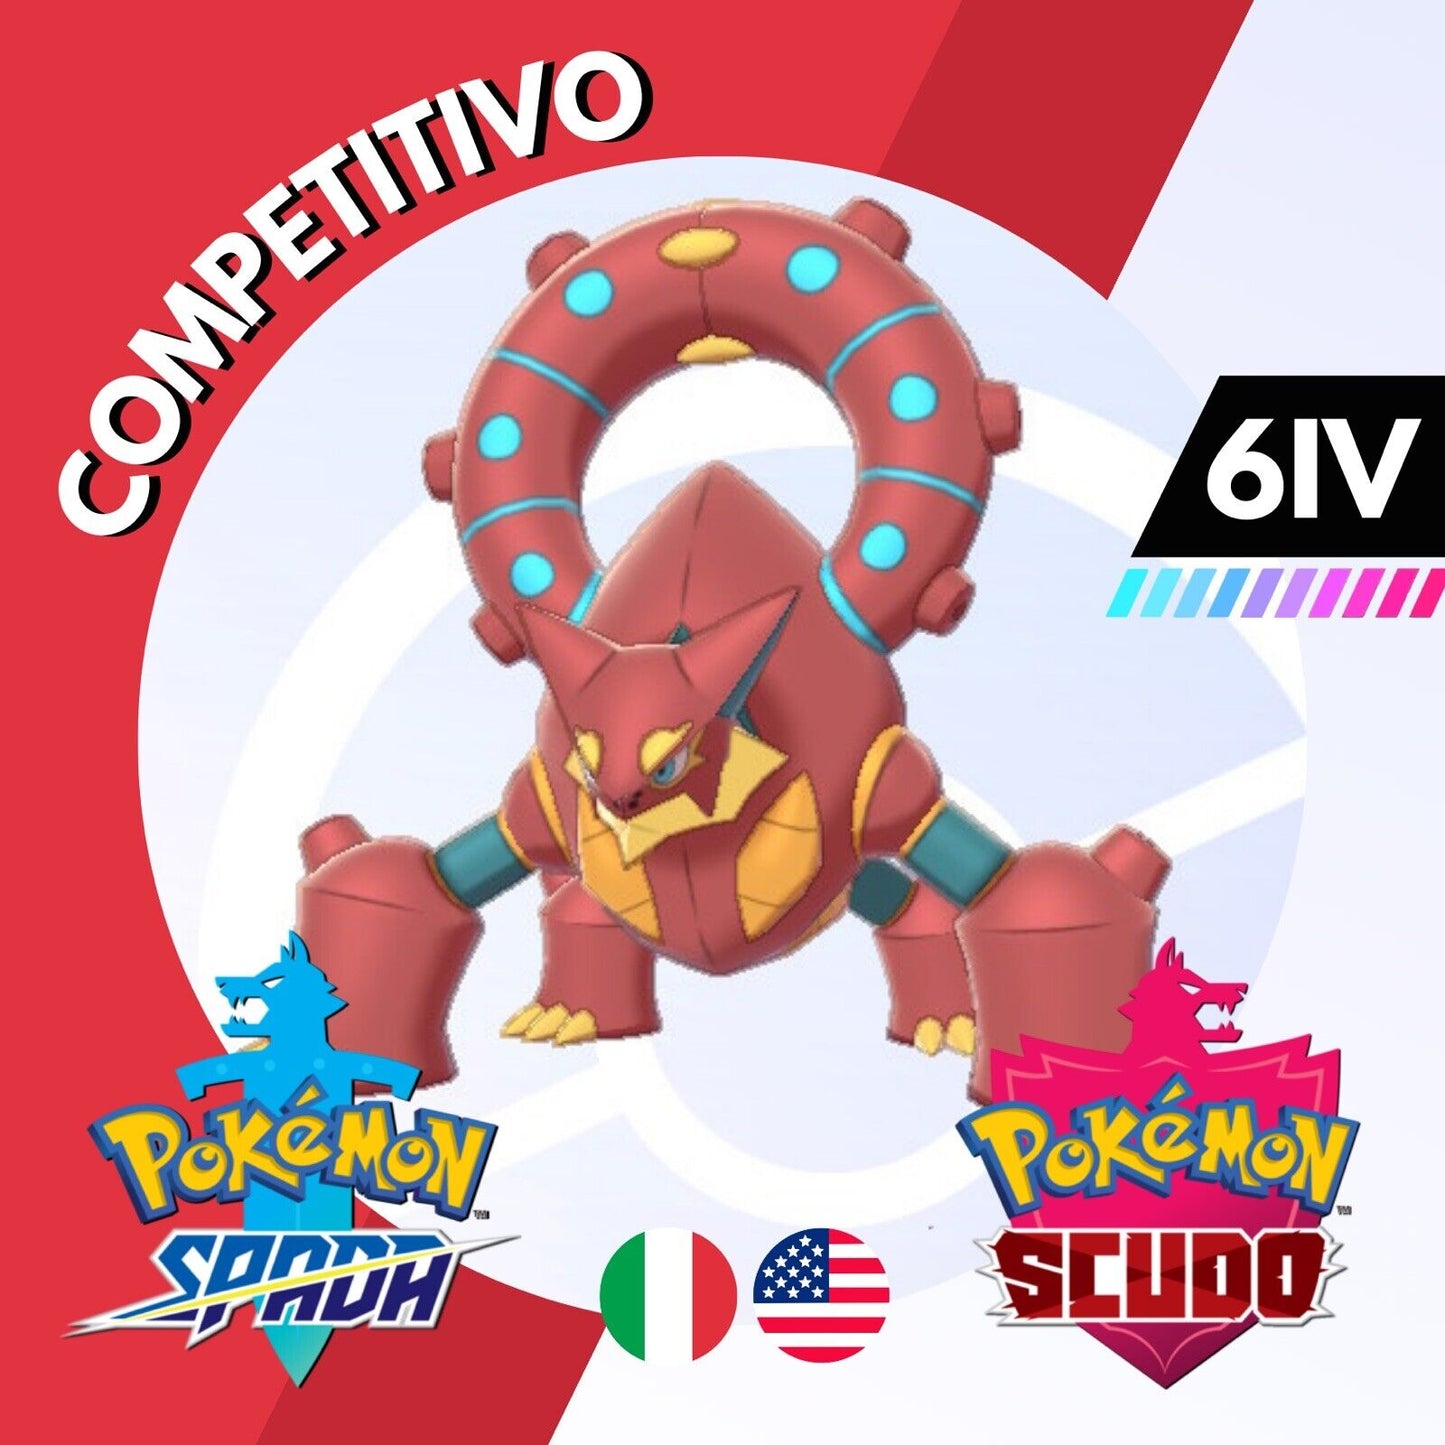 Volcanion Competitivo Non Shiny 6 IV Legit Pokemon Spada Scudo Sword Shield 100